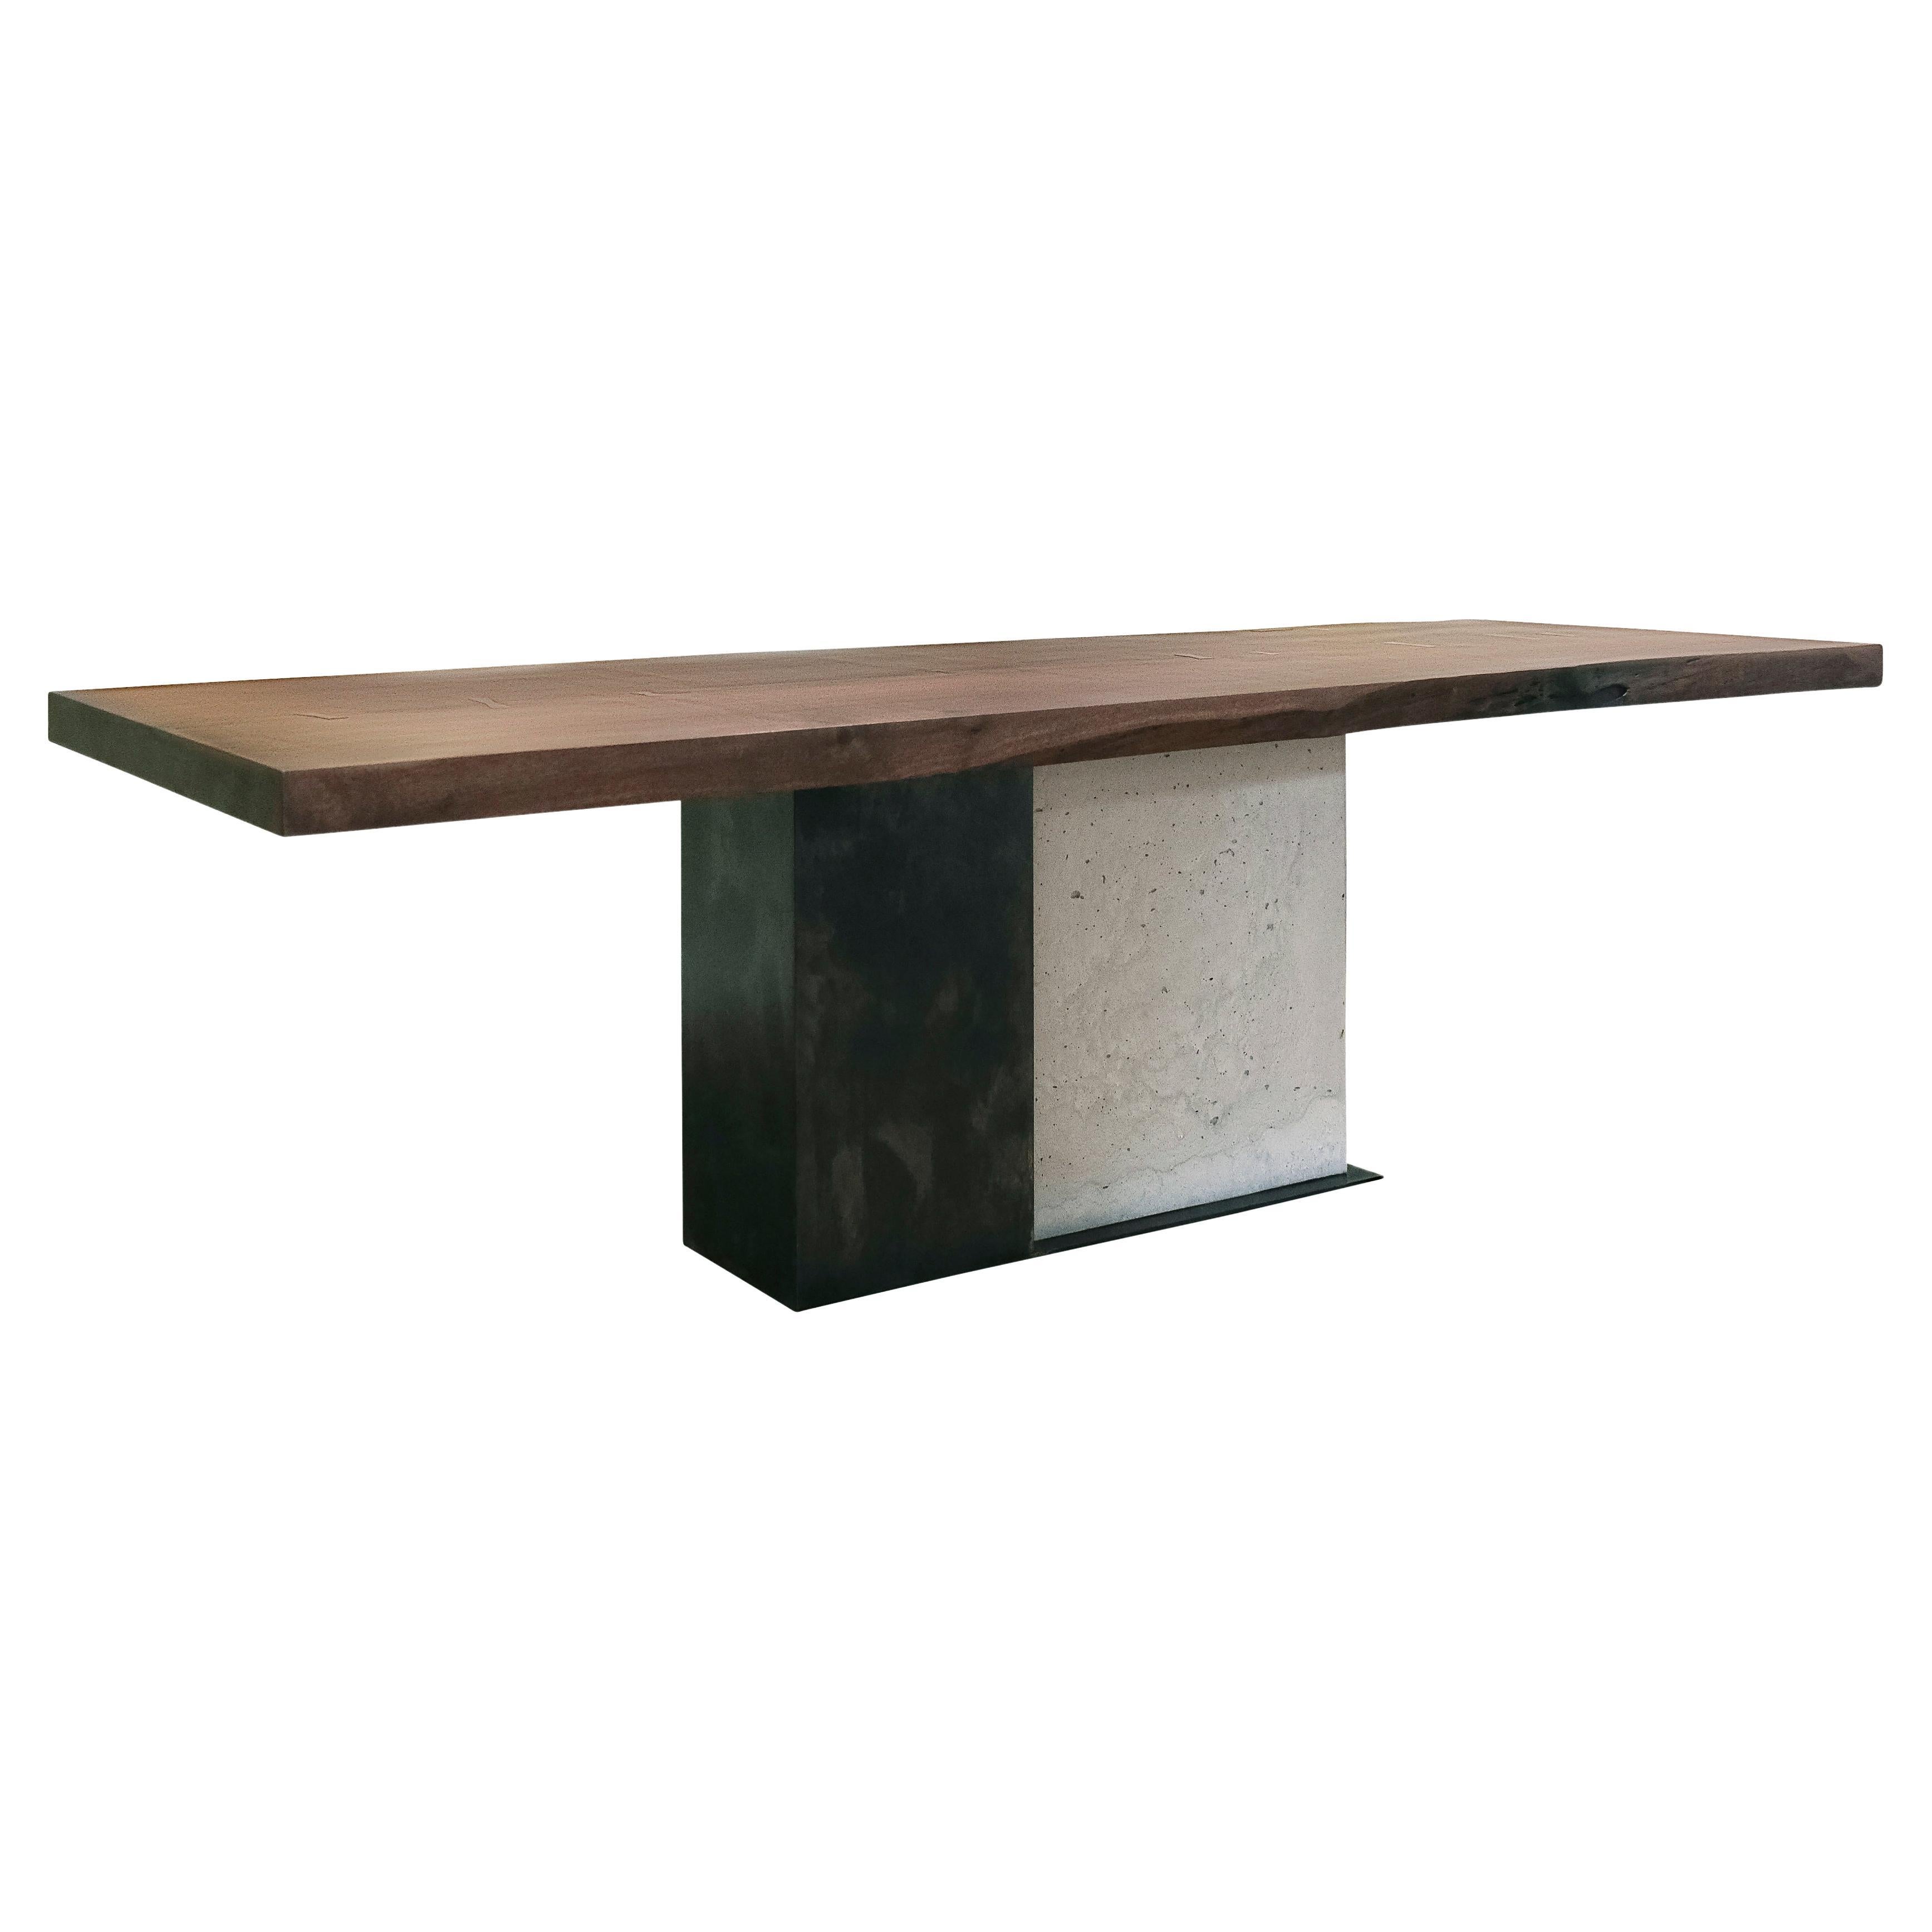 T-2 Esstisch, Tischplatte aus Walnussholz mit lebendiger Kante, Untergestell aus patiniertem Stahl und Beton